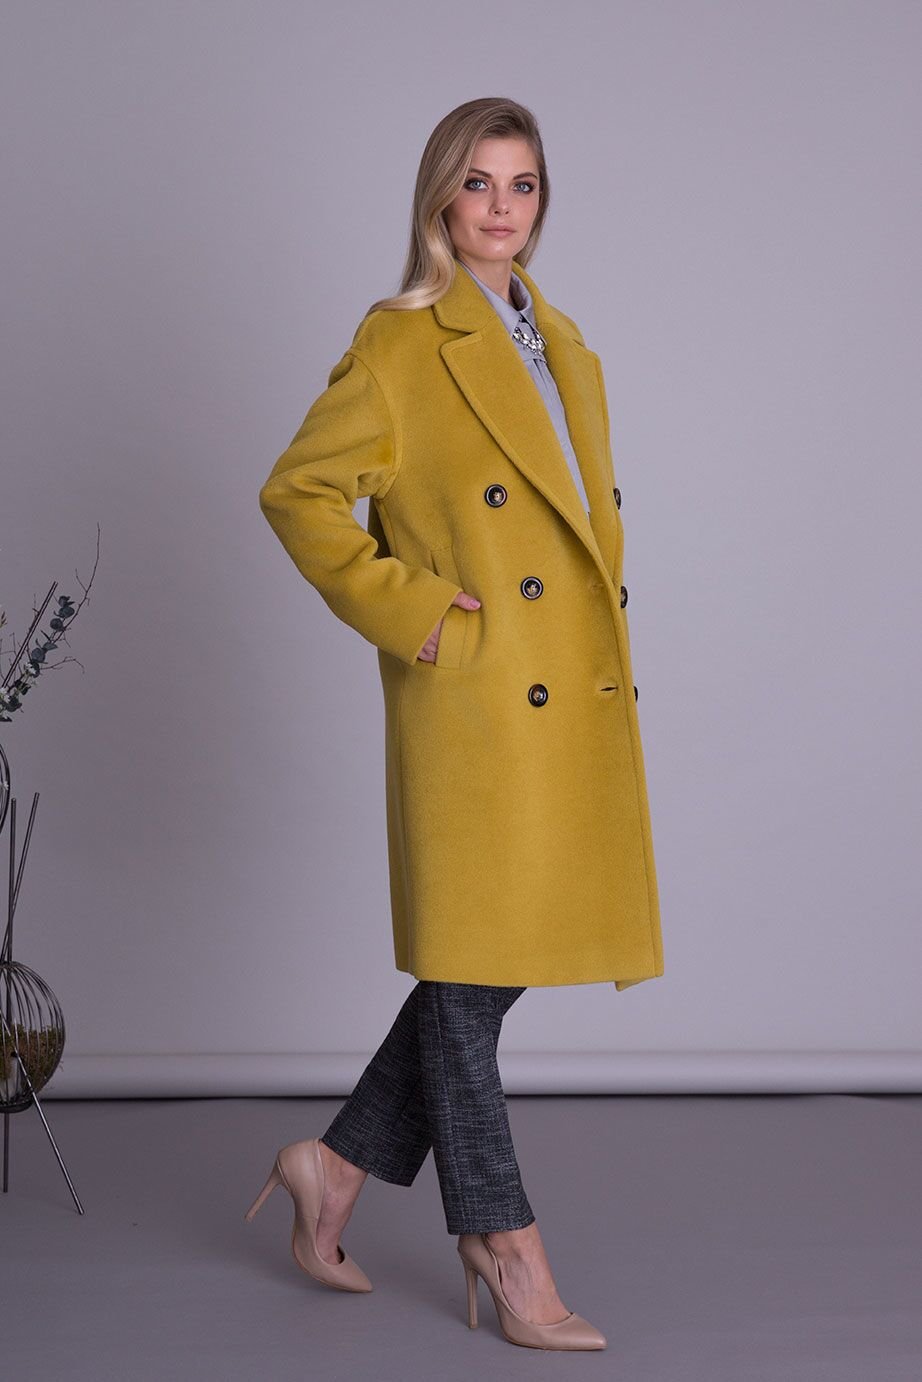 Silk Wool Fabric Yellow Midi Coat